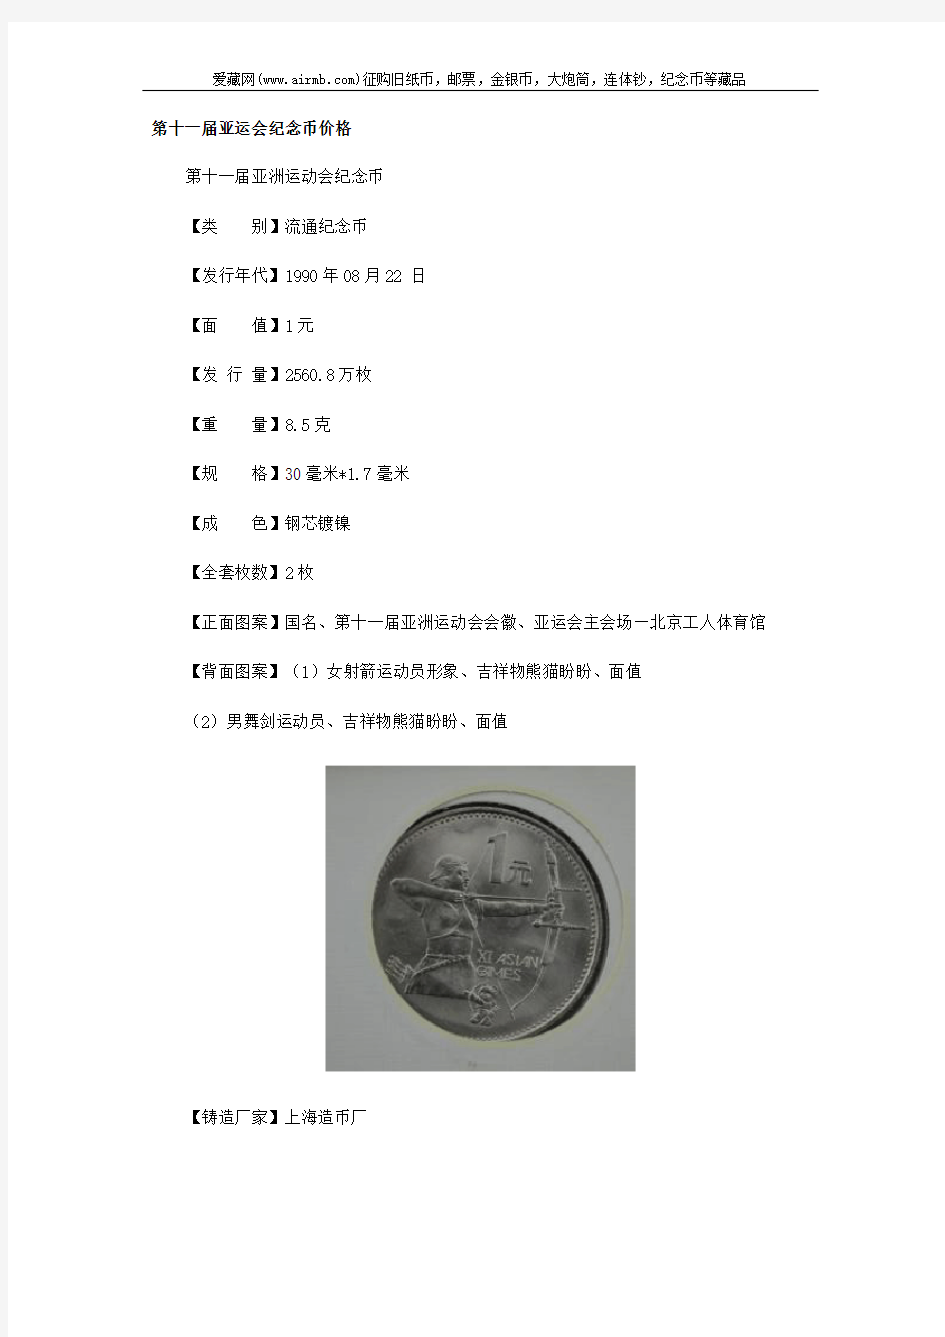 第十一届亚运会纪念币价格